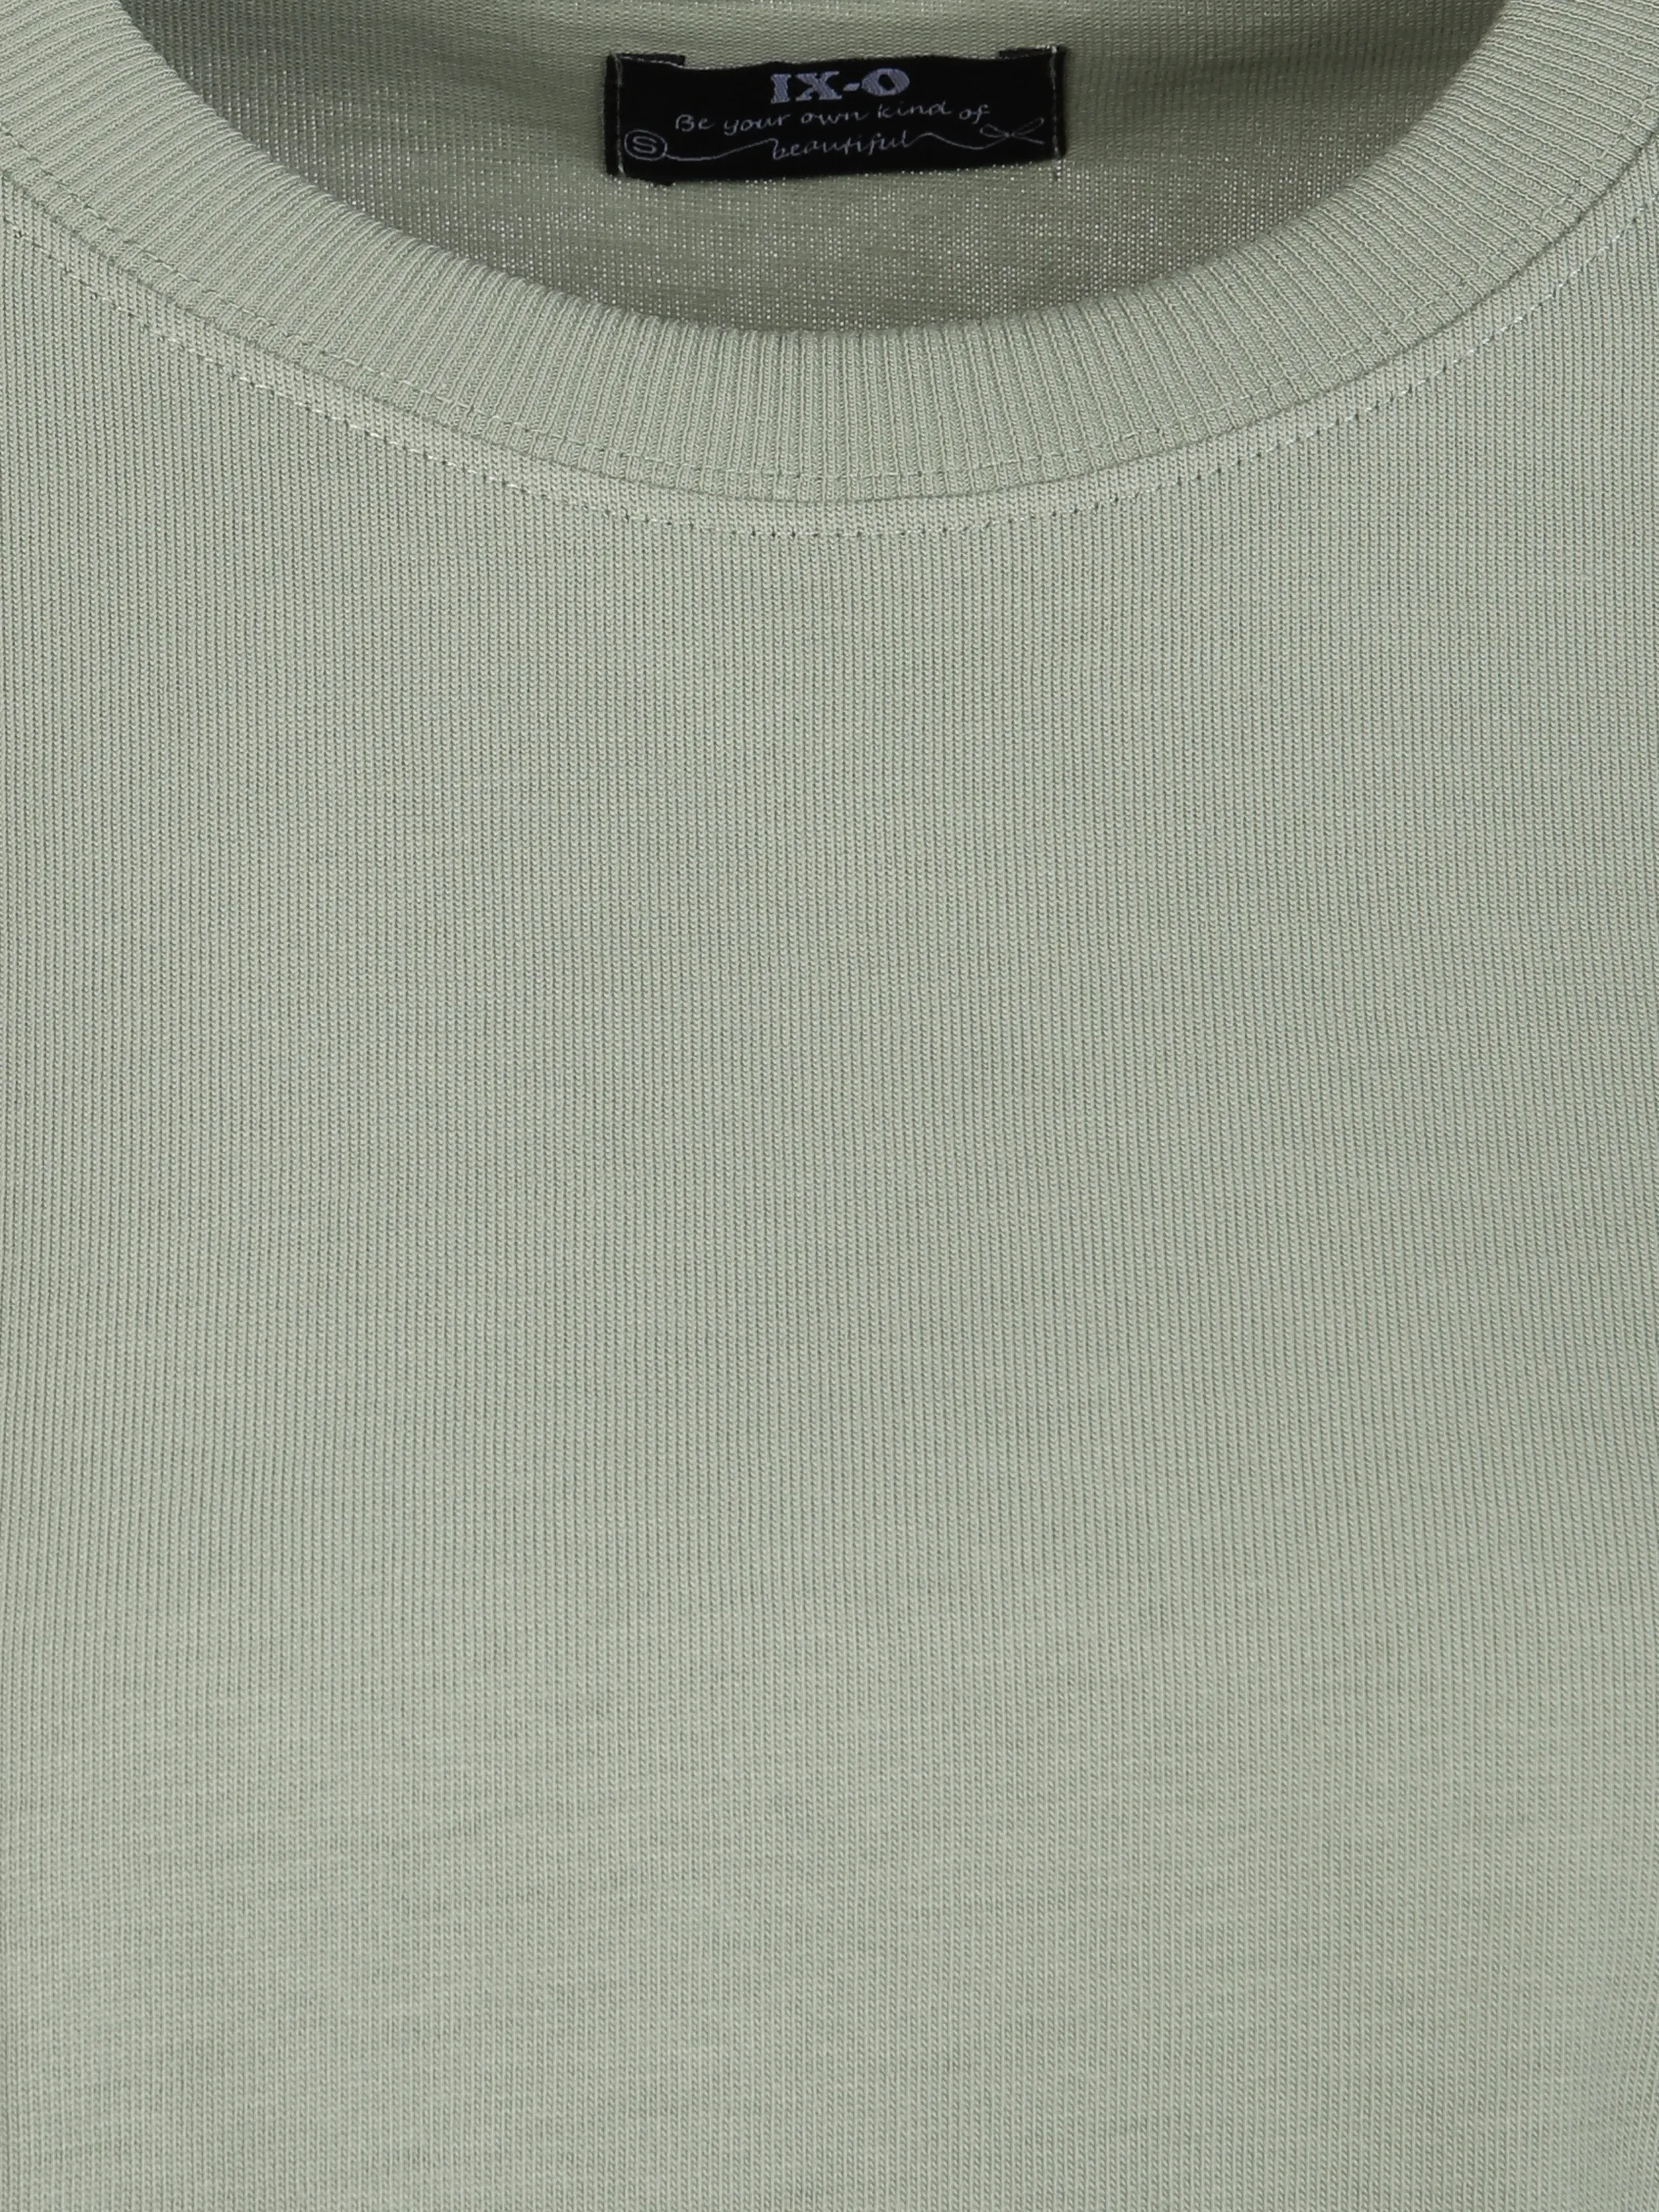 IX-O YF-Da T-Shirt Grün 890371 KHAKI 3